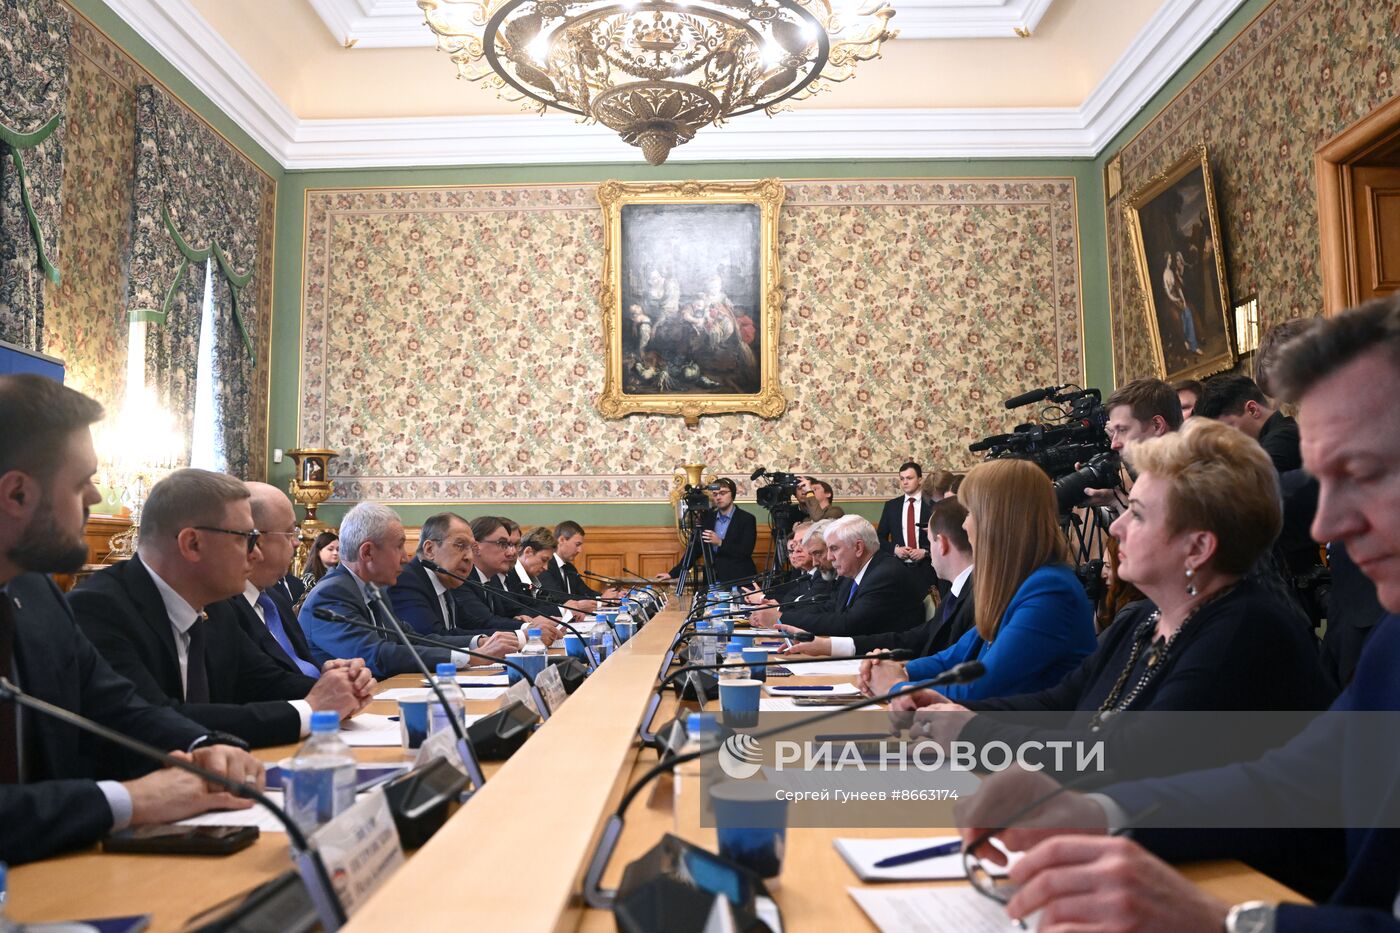 Глава МИД Сергей Лавров принял участие в заседании комиссии "Единой России" по международному сотрудничеству